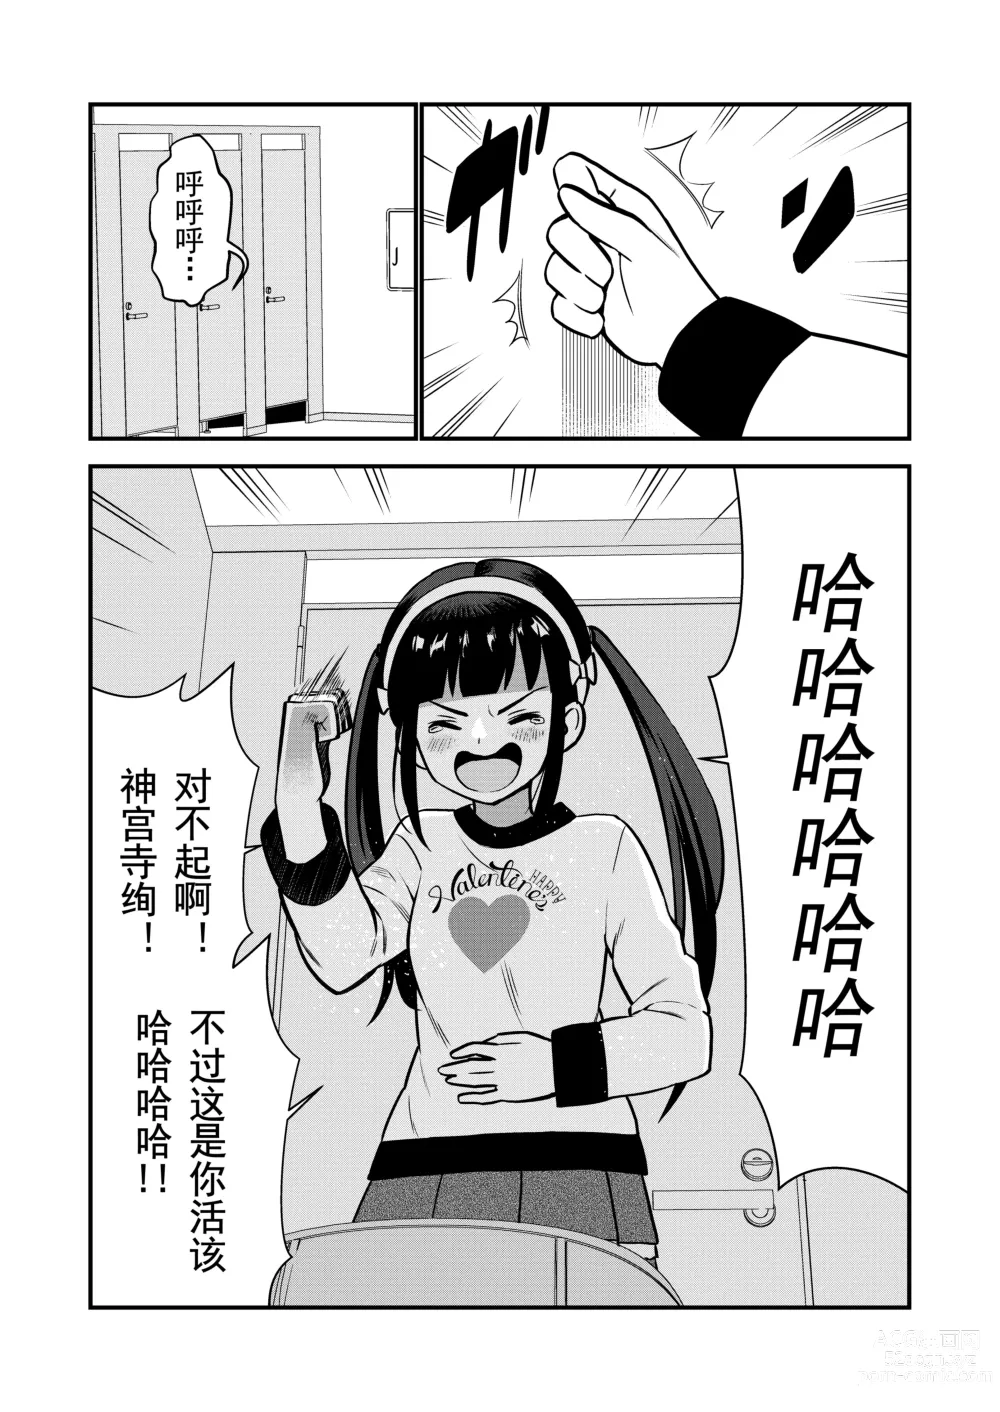 Page 21 of doujinshi 被惩罚后的当天,下半身禁止穿衣服的学校